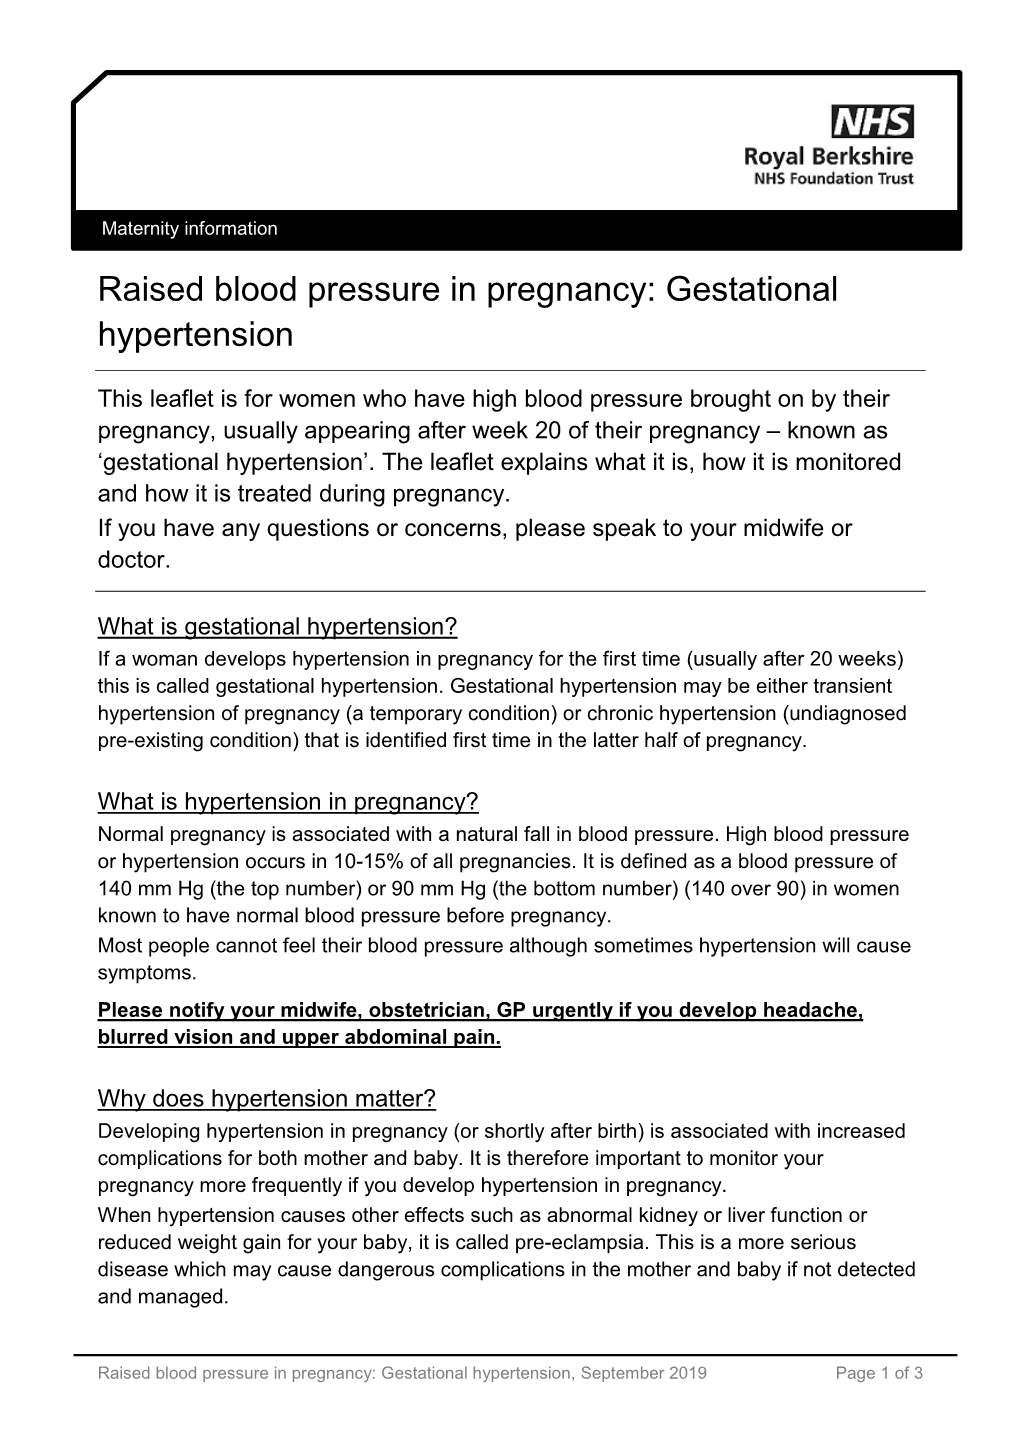 Raised Blood Pressure in Pregnancy: Gestational Hypertension